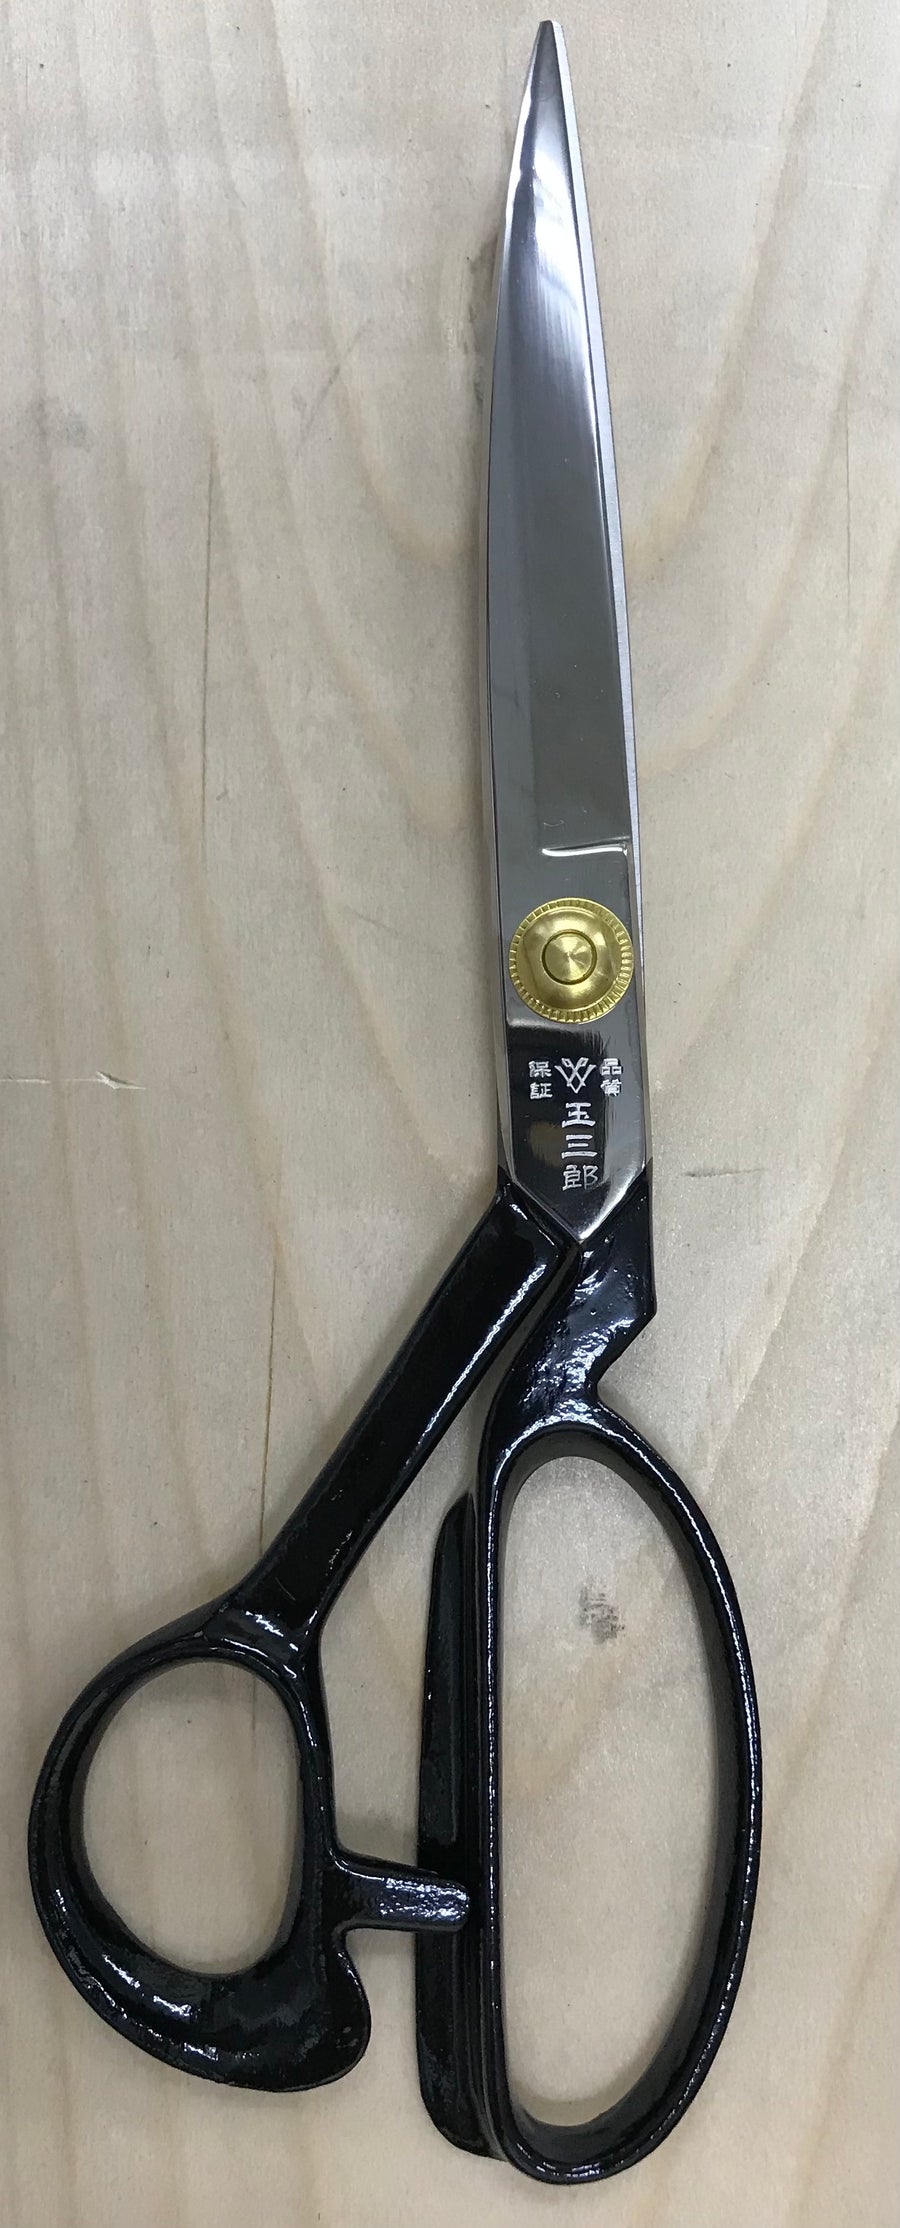 ラシャ切鋏 – Unison Scissors